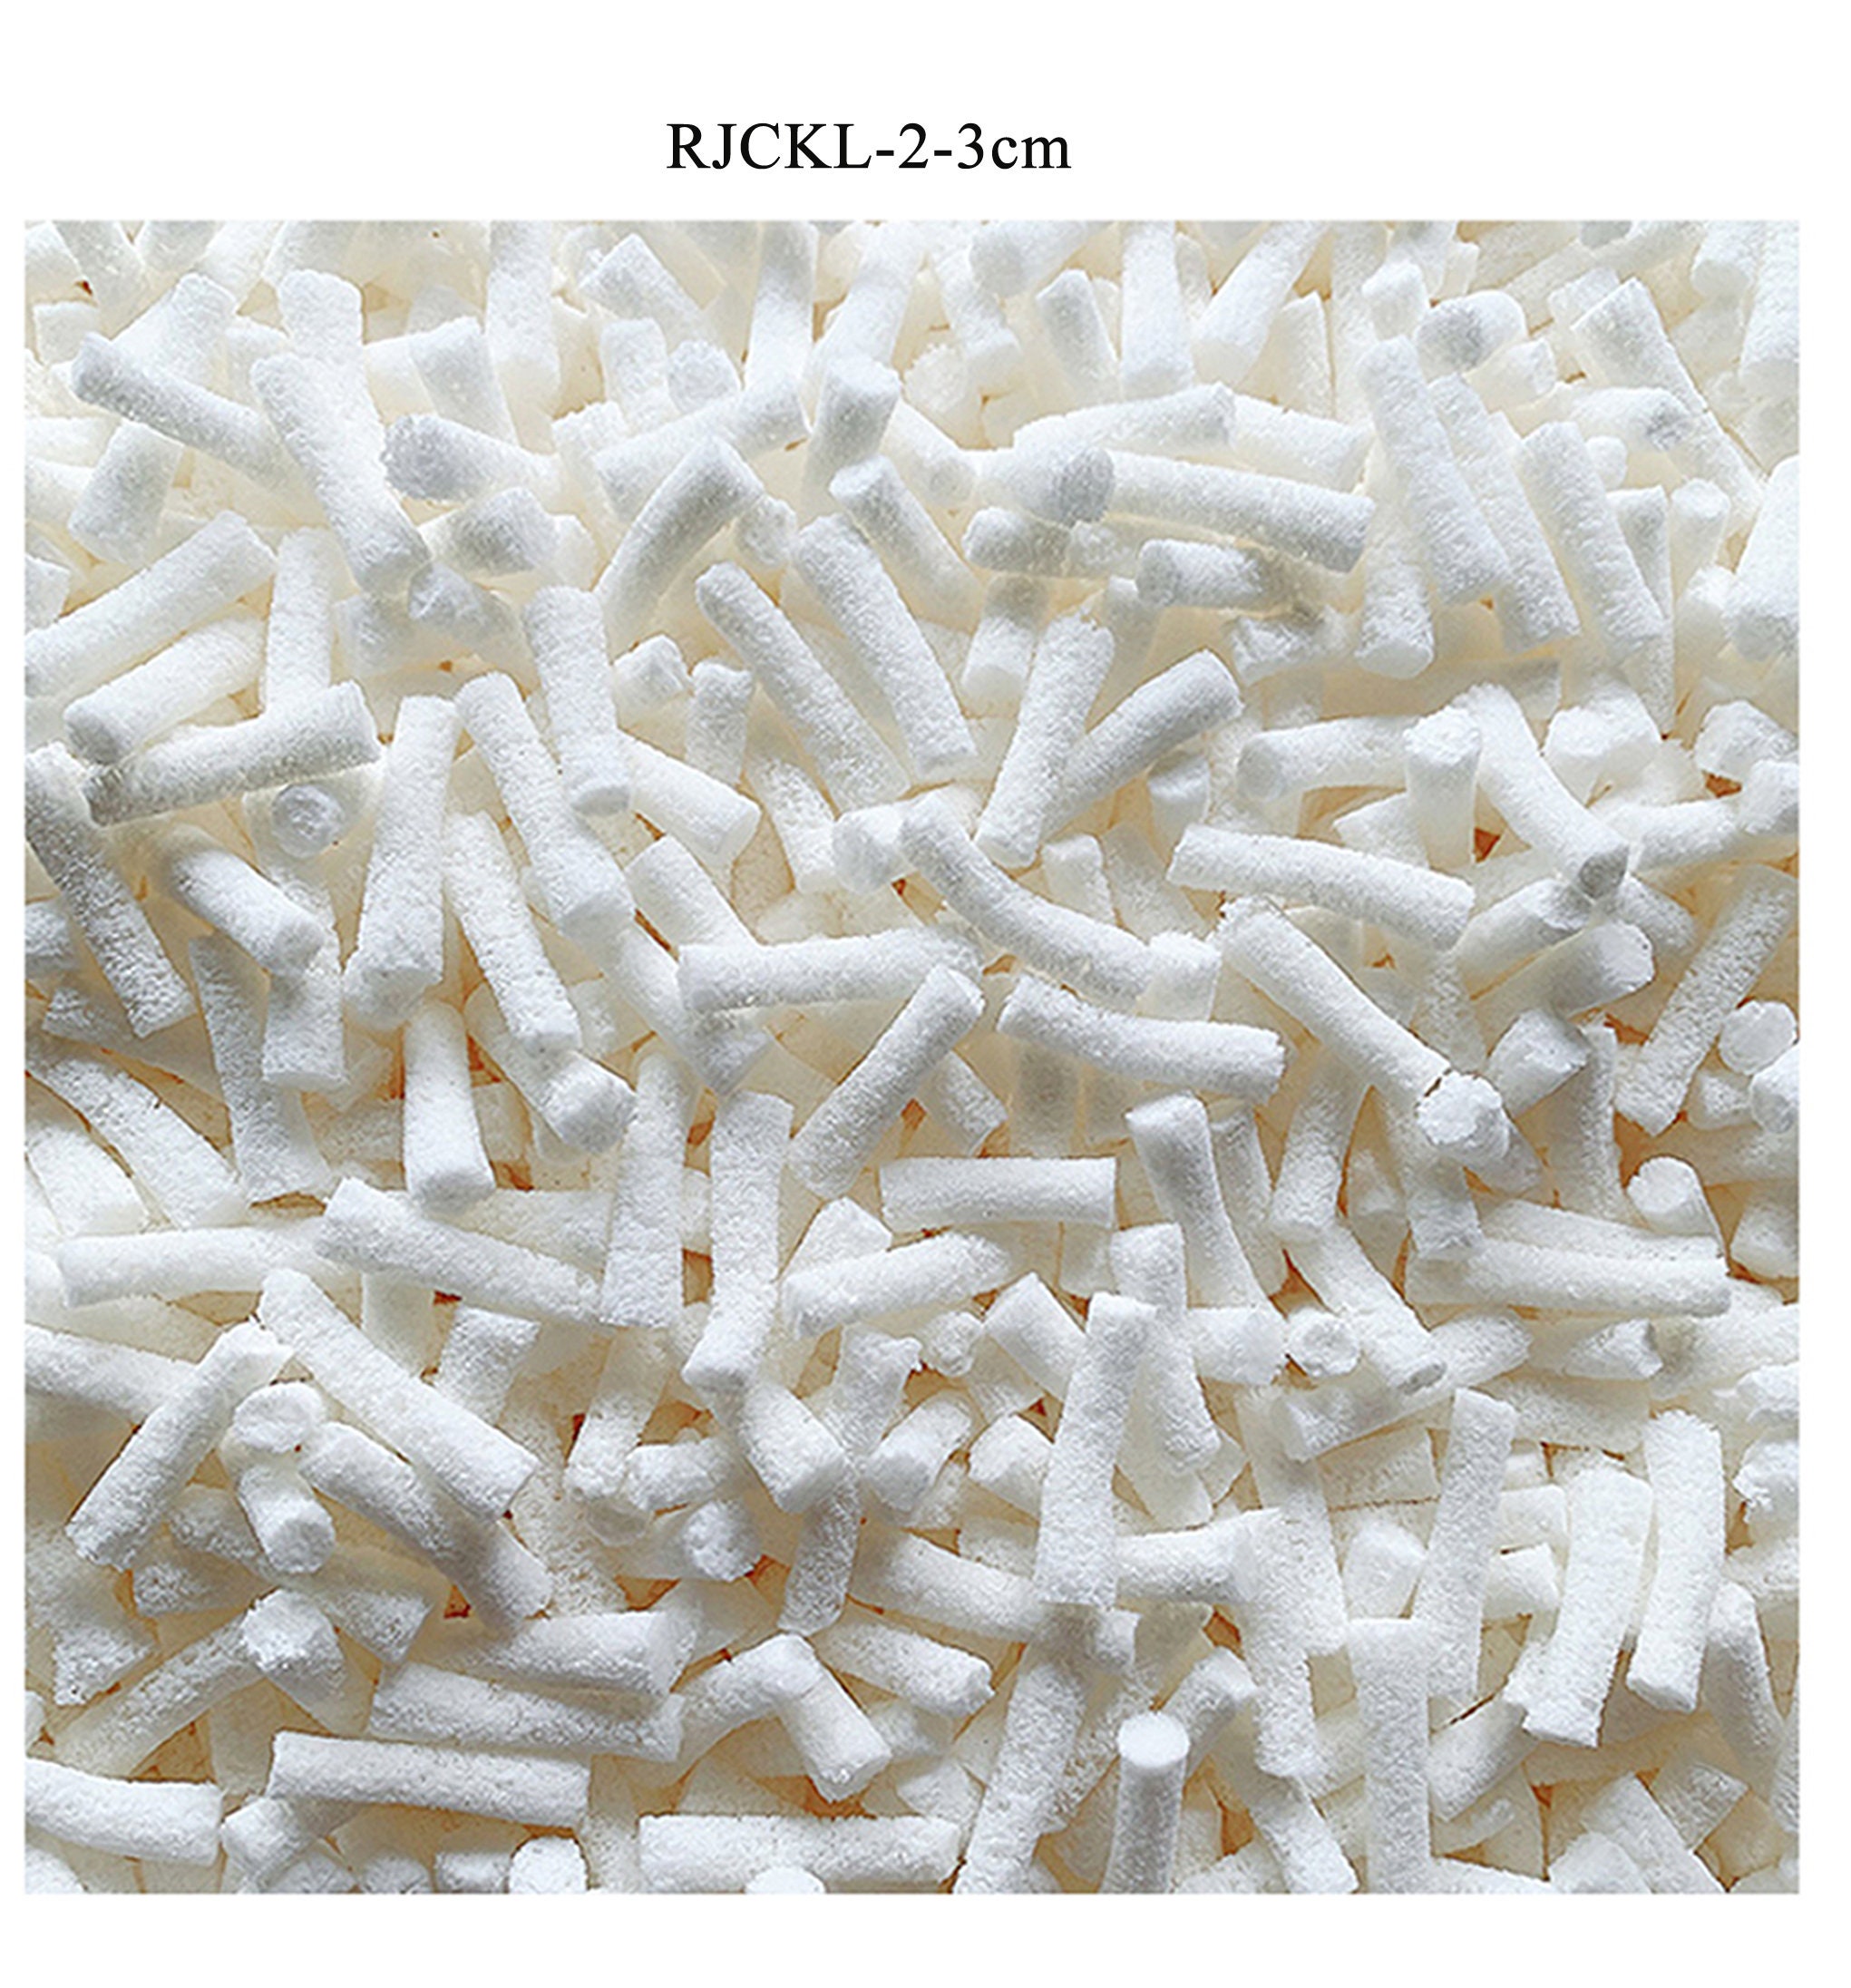 Shredded Memory Foam Fill for Bean Bags, Foam Sacks, Pillows